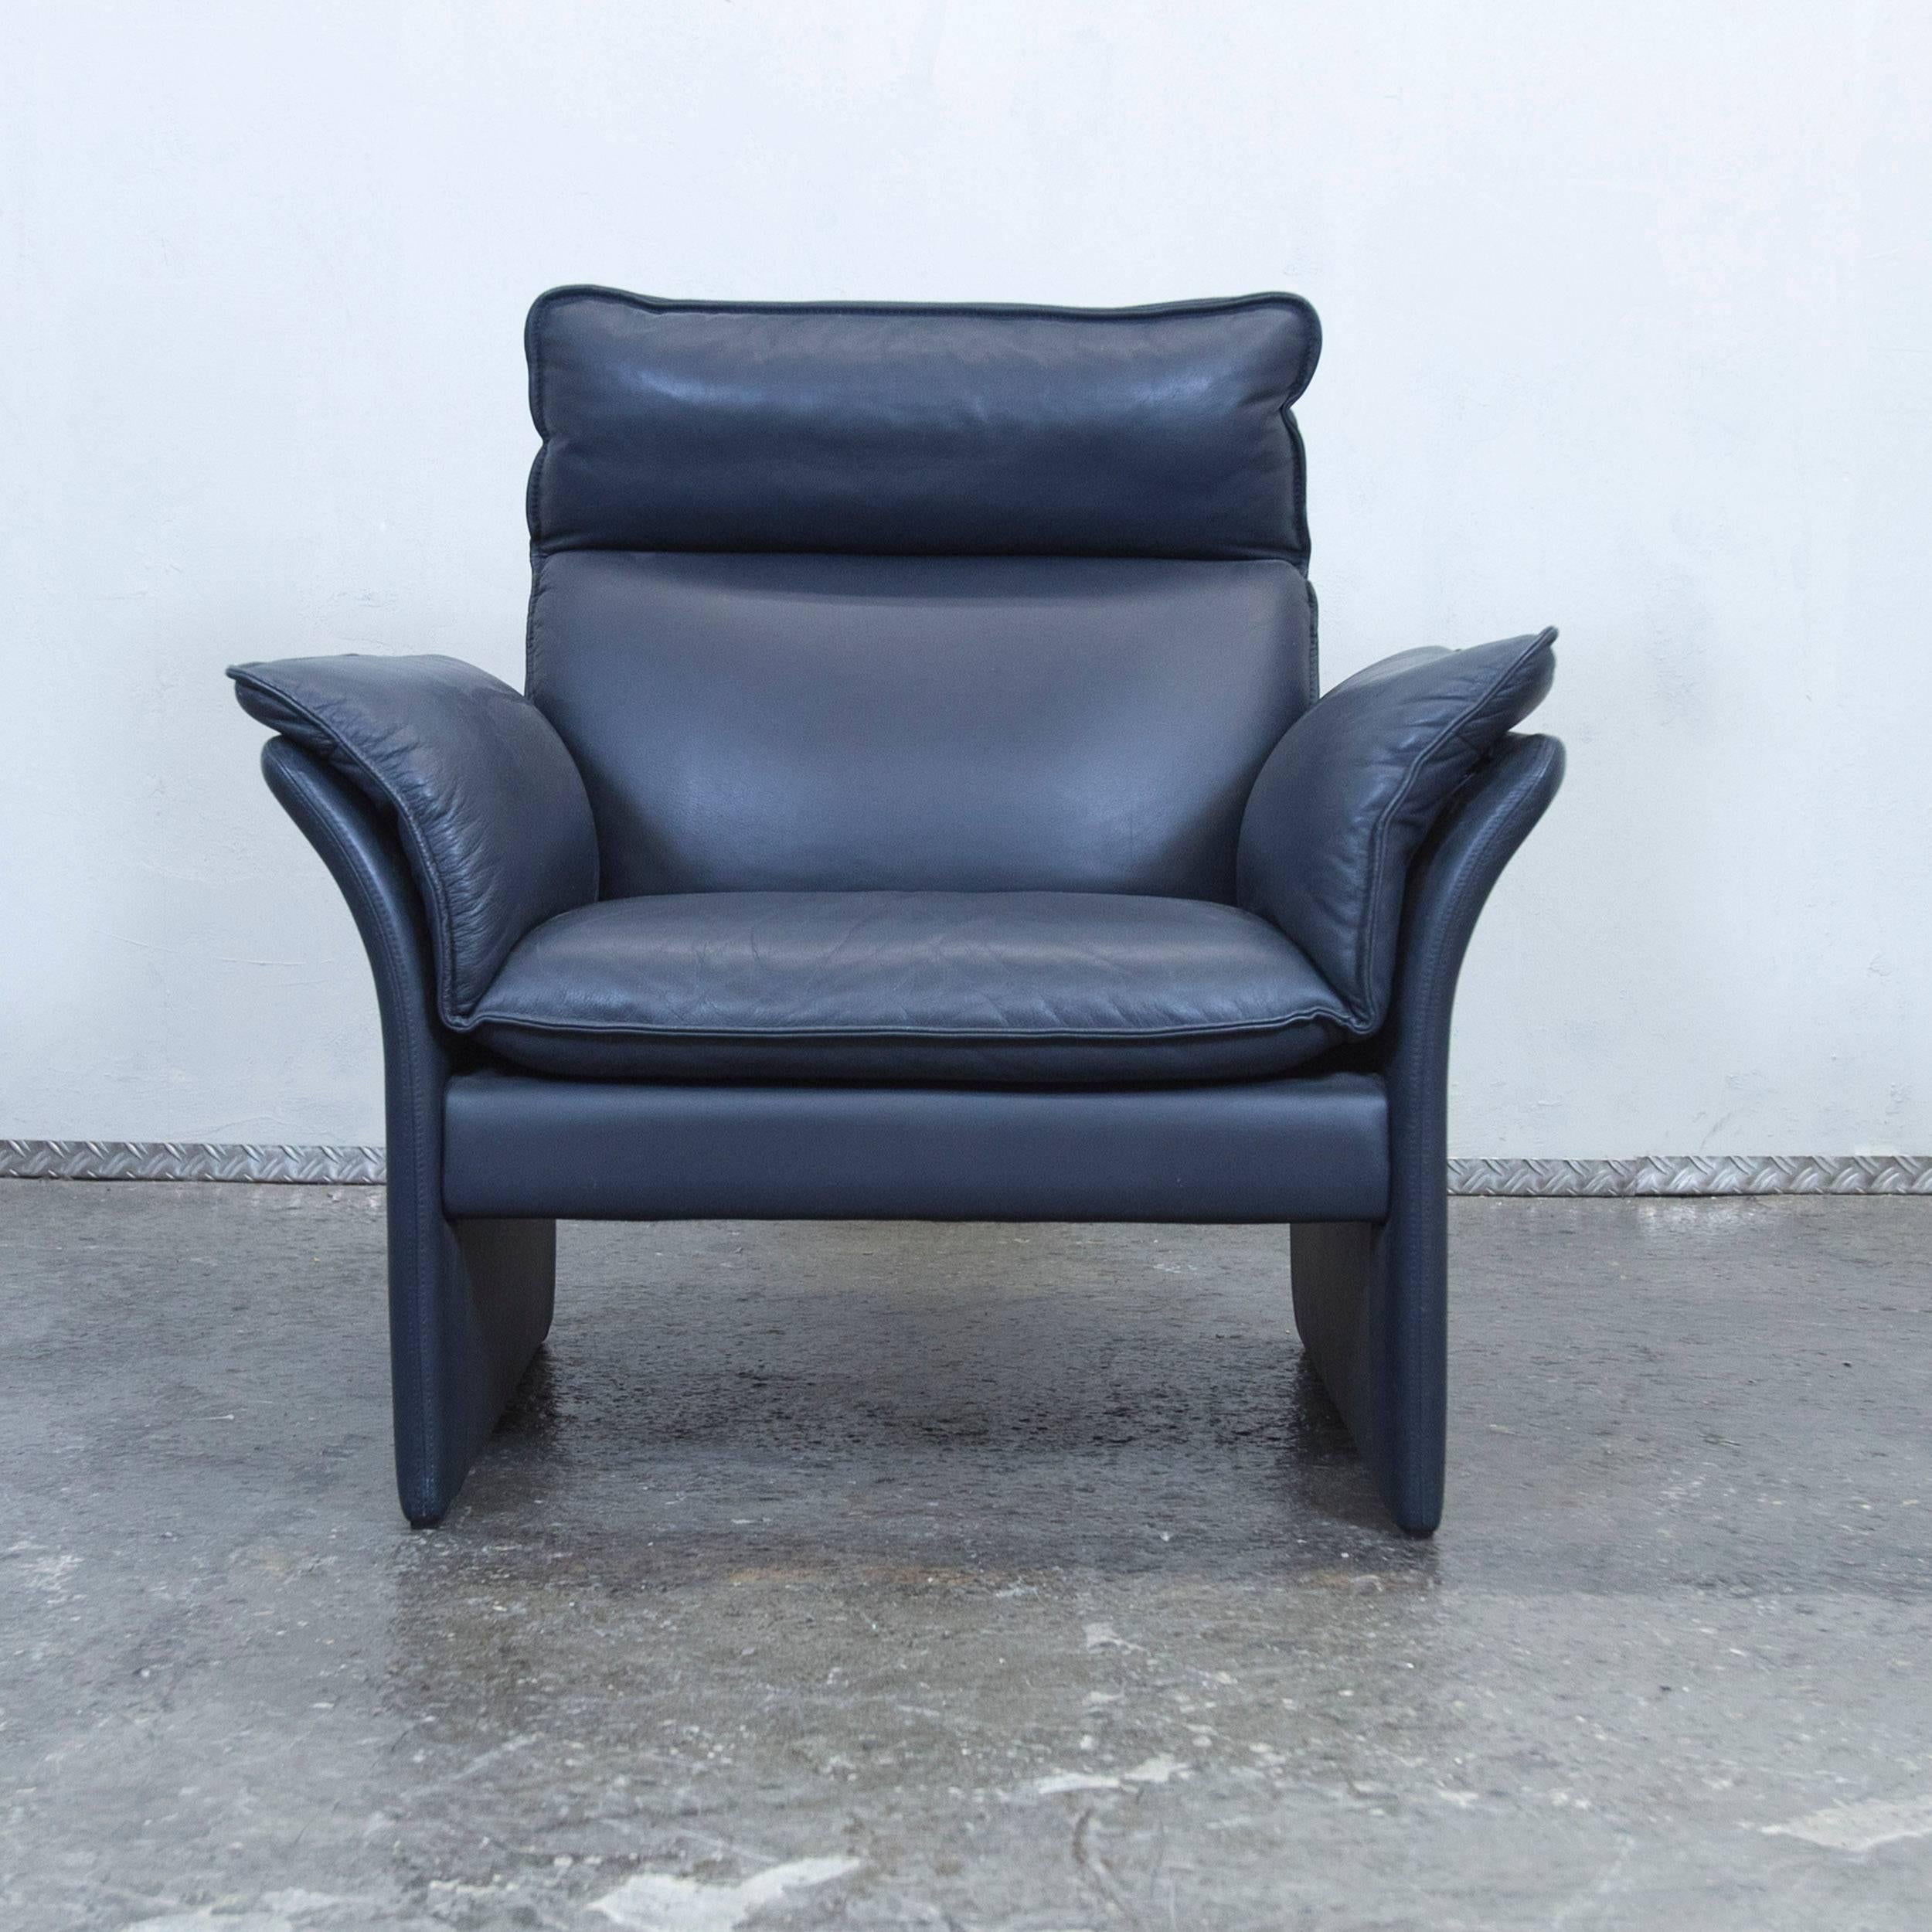 German Dreipunkt Designer Chair Leather Blue Grey Couch Modern